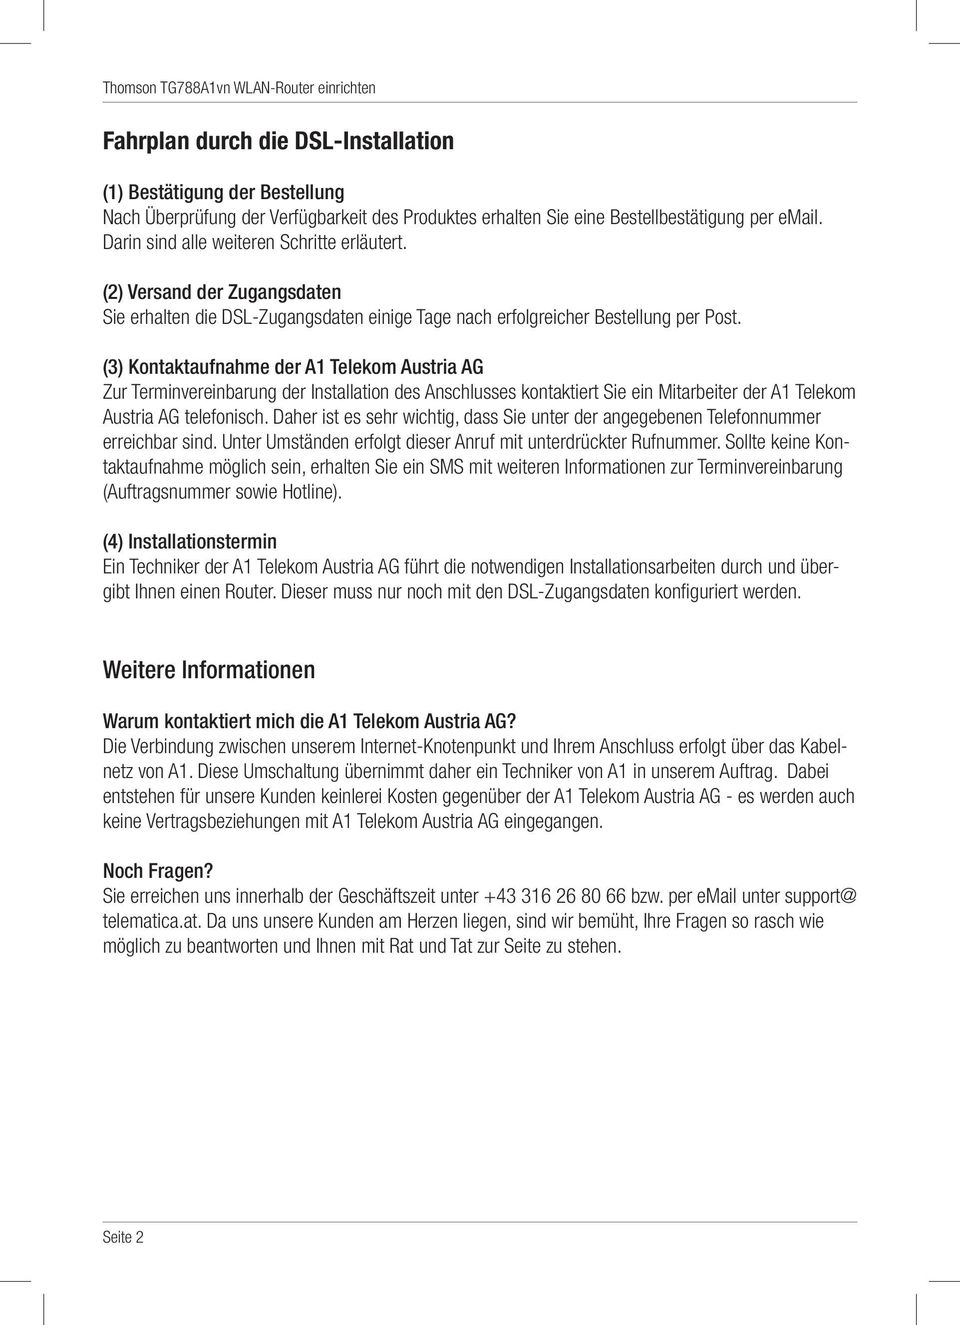 (3) Kontaktaufnahme der A1 Telekom Austria AG Zur Terminvereinbarung der Installation des Anschlusses kontaktiert Sie ein Mitarbeiter der A1 Telekom Austria AG telefonisch.